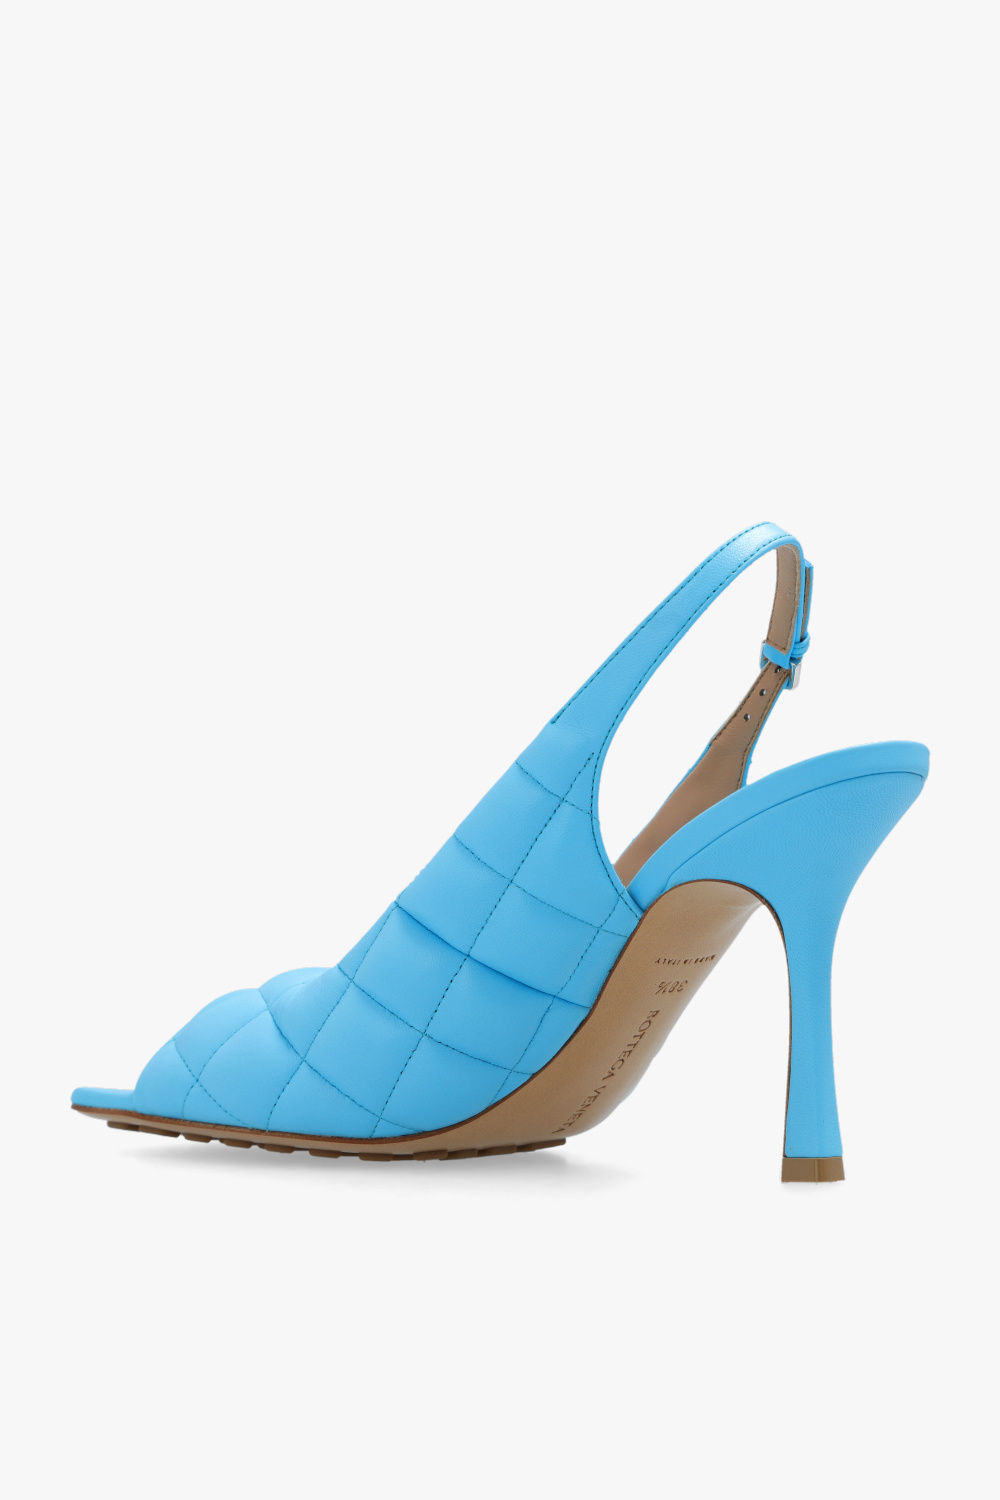 bottega modelo Veneta ‘Slingback’ heeled sandals